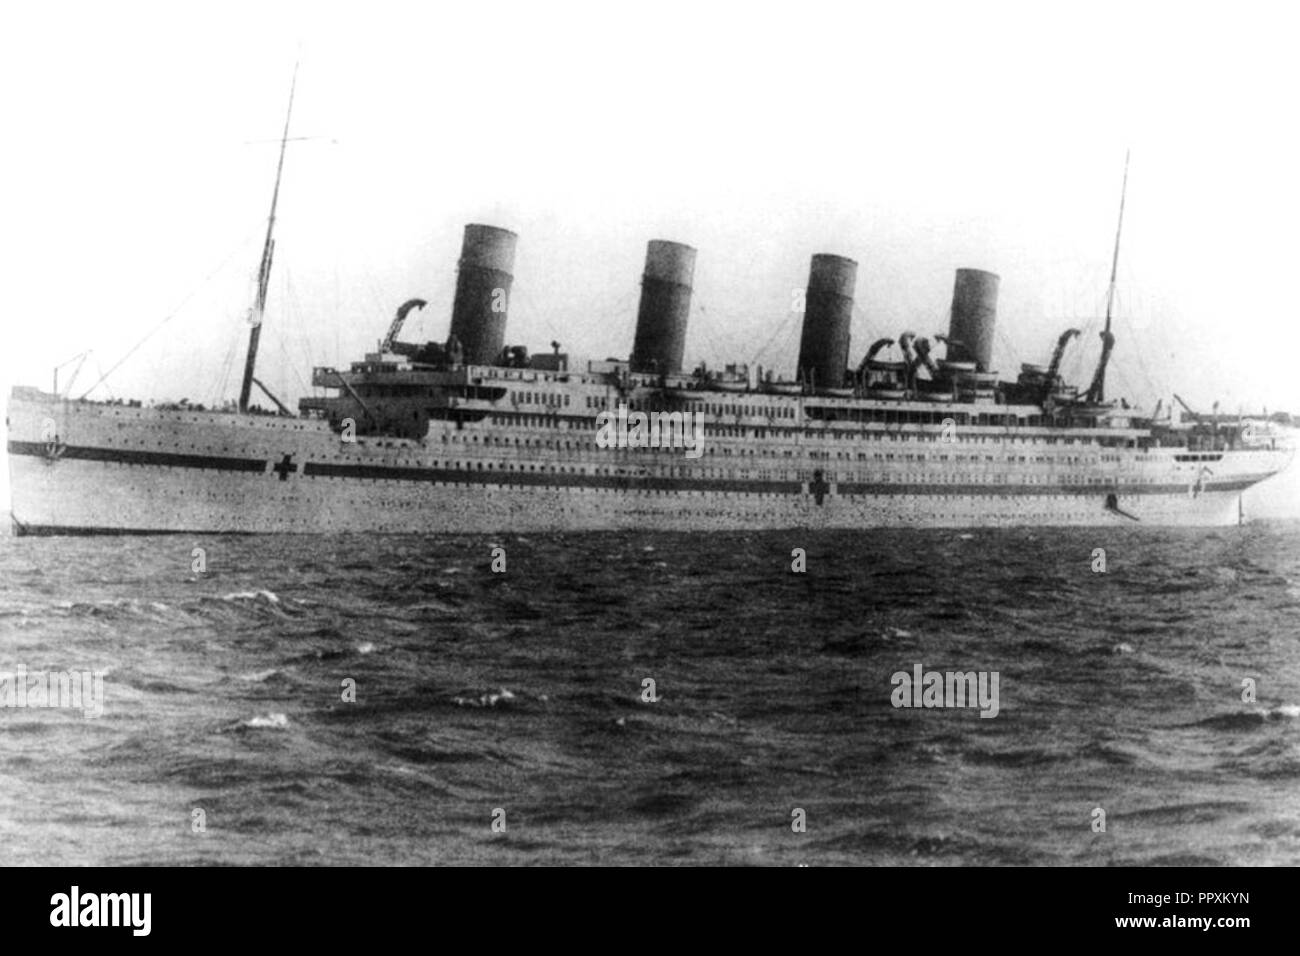 Britannic during WWI. Stock Photo